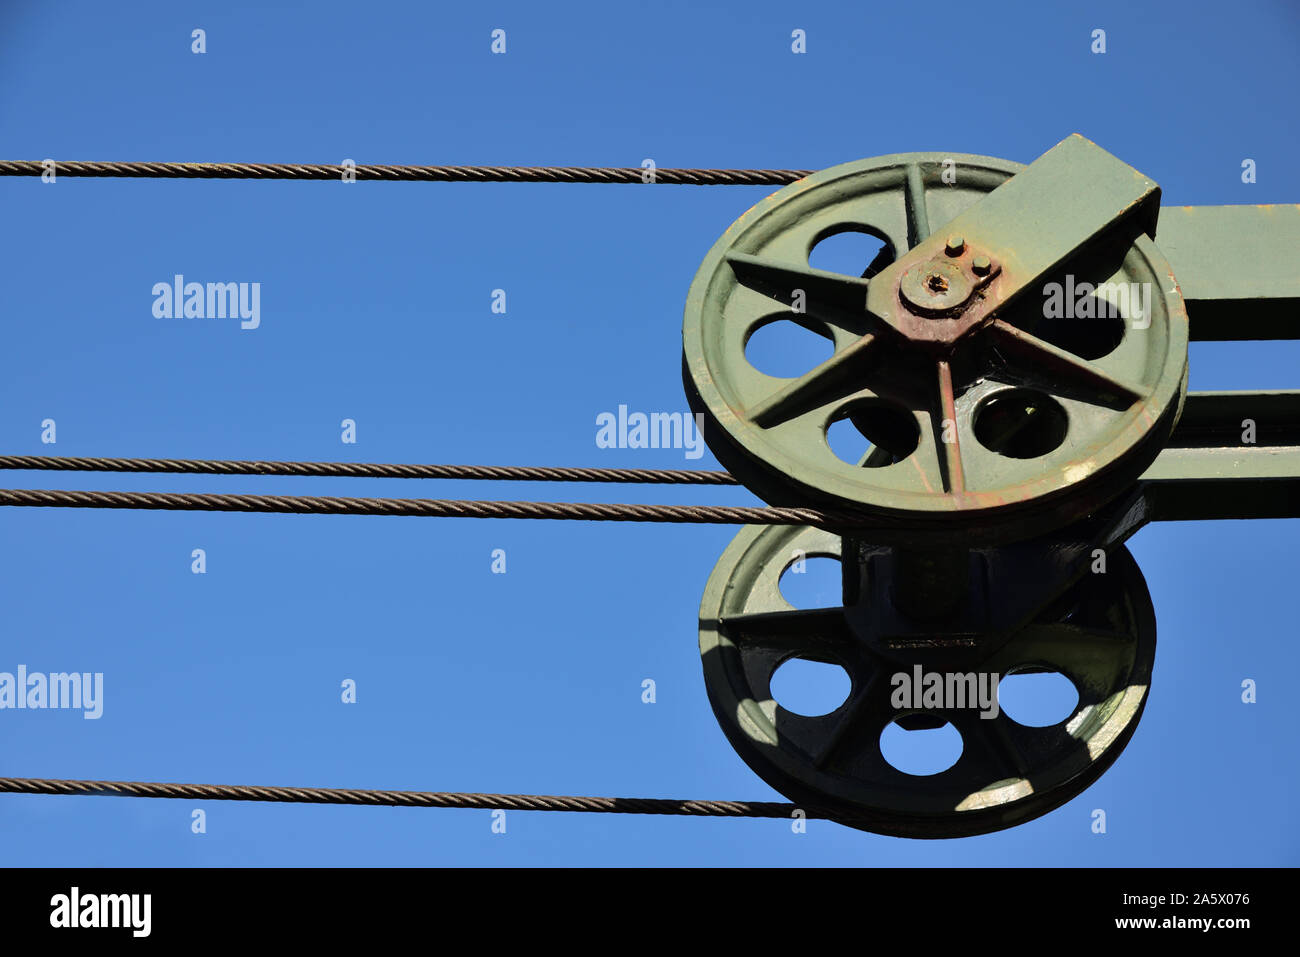 Rolling über Metall, ein Stahlseil erstreckt sich gegen einen blauen Himmel als Hintergrund Stockfoto